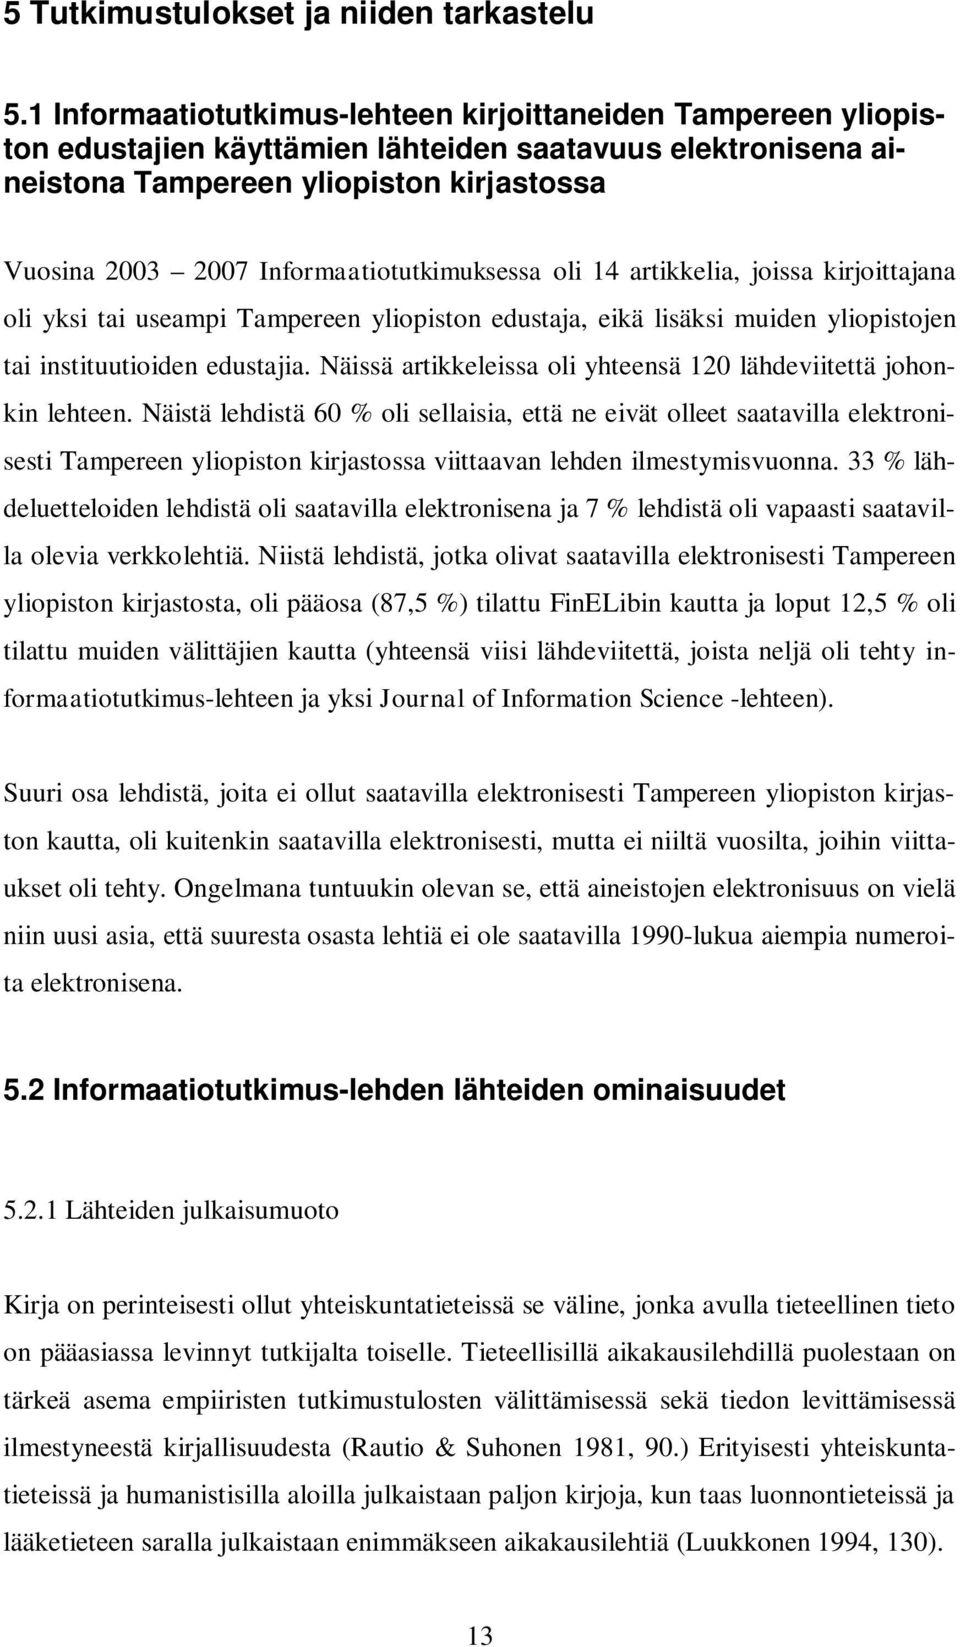 Informaatiotutkimuksessa oli 14 artikkelia, joissa kirjoittajana oli yksi tai useampi Tampereen yliopiston edustaja, eikä lisäksi muiden yliopistojen tai instituutioiden edustajia.